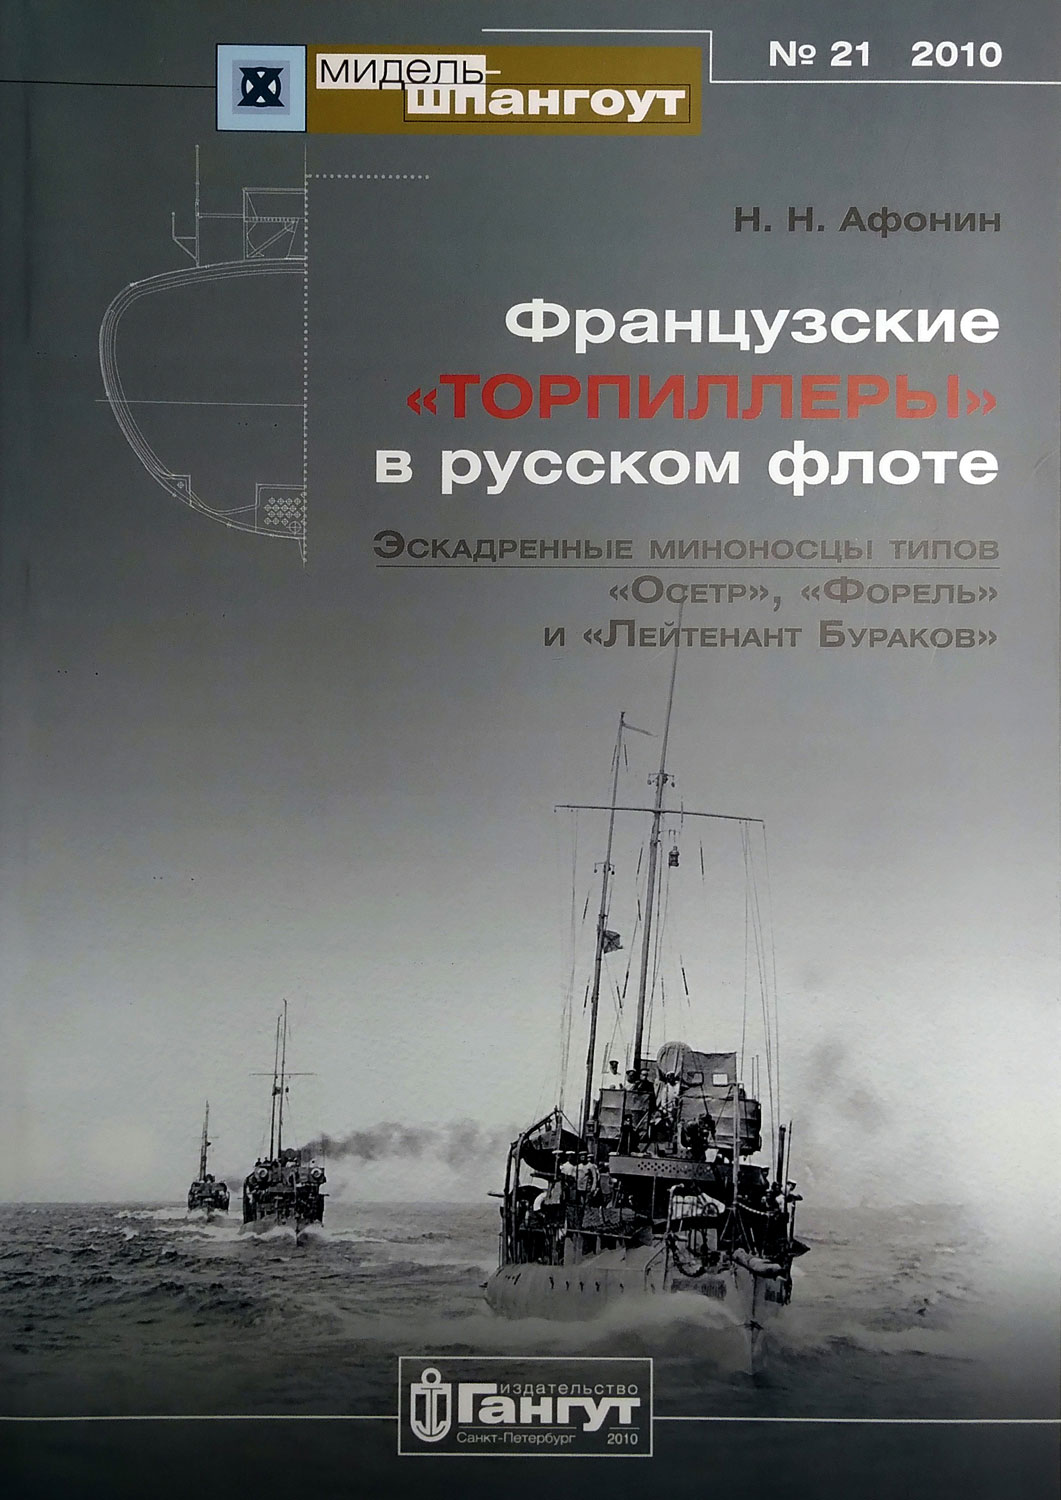 «Мидель-шпангоут» № 21. Французские «торпиллеры» в русском флоте